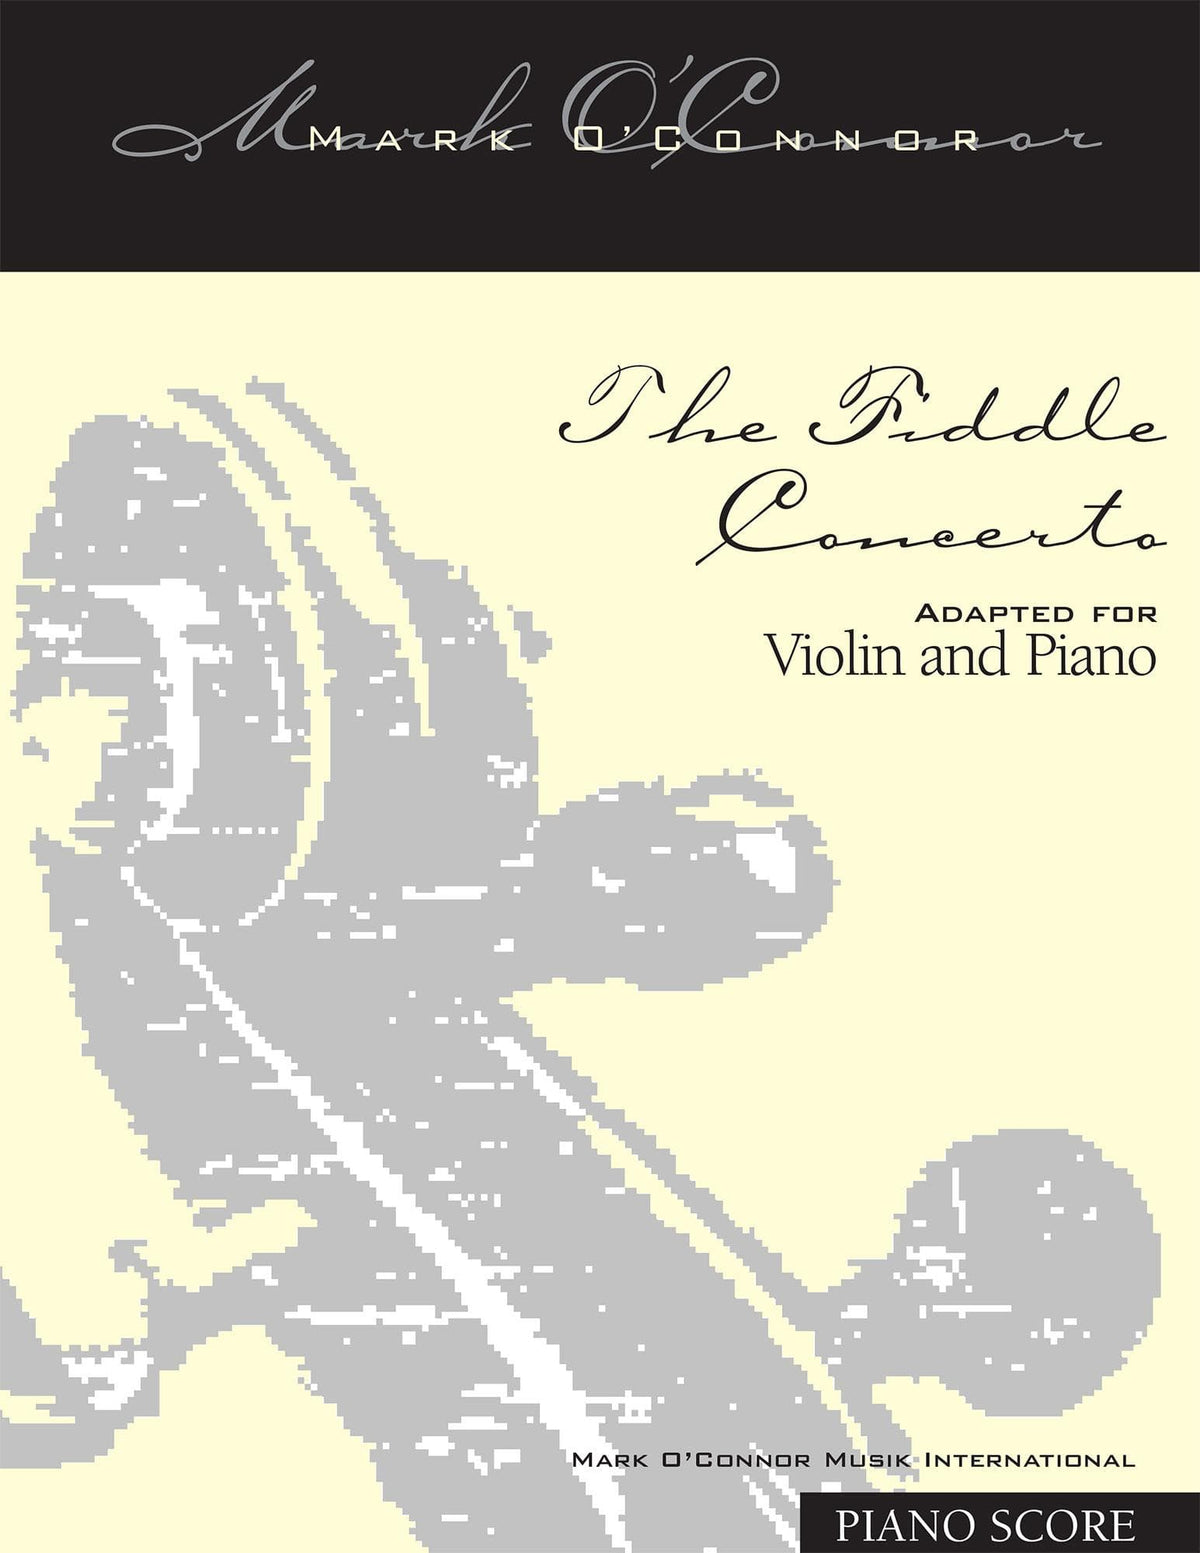 O'Connor, Mark - The FIDDLE CONCERTO for Violin and Piano - Piano Score - Digital Download